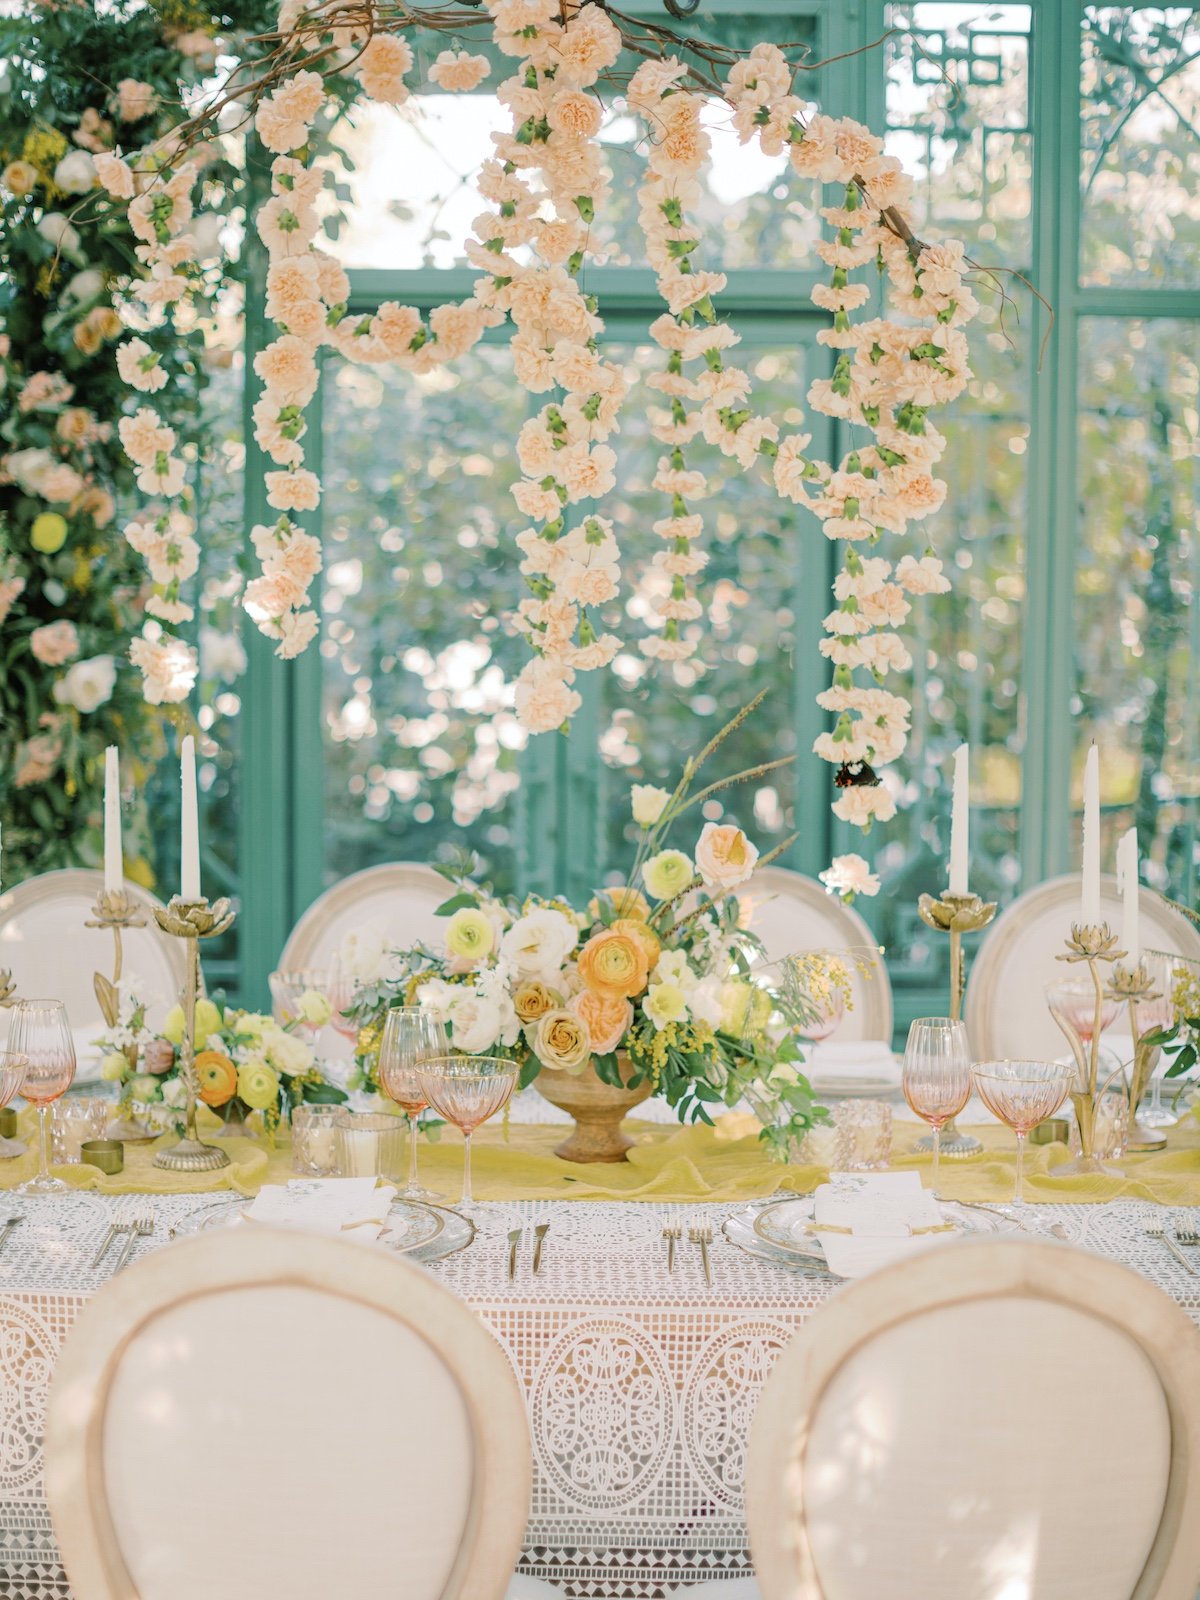 yellow, peach and white wedding decor ideas